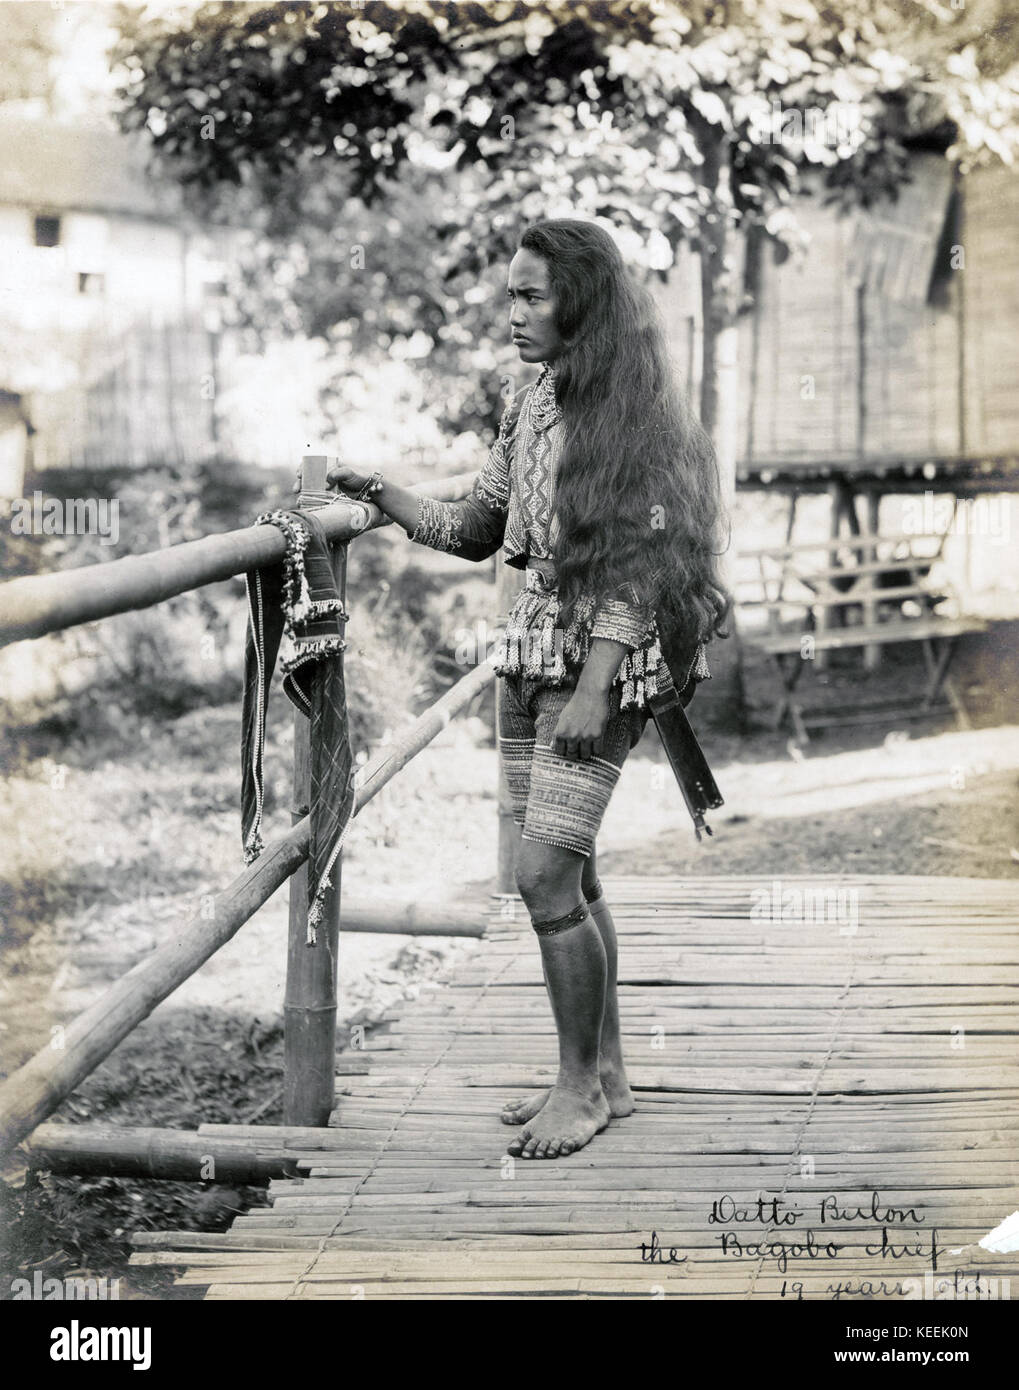 Datbi Bulon, Bagabo chief. 19 Jahre alt. (Philippinische Reservierung, Abteilung für Anthropologie, der weltweit 1904 Fair) Stockfoto